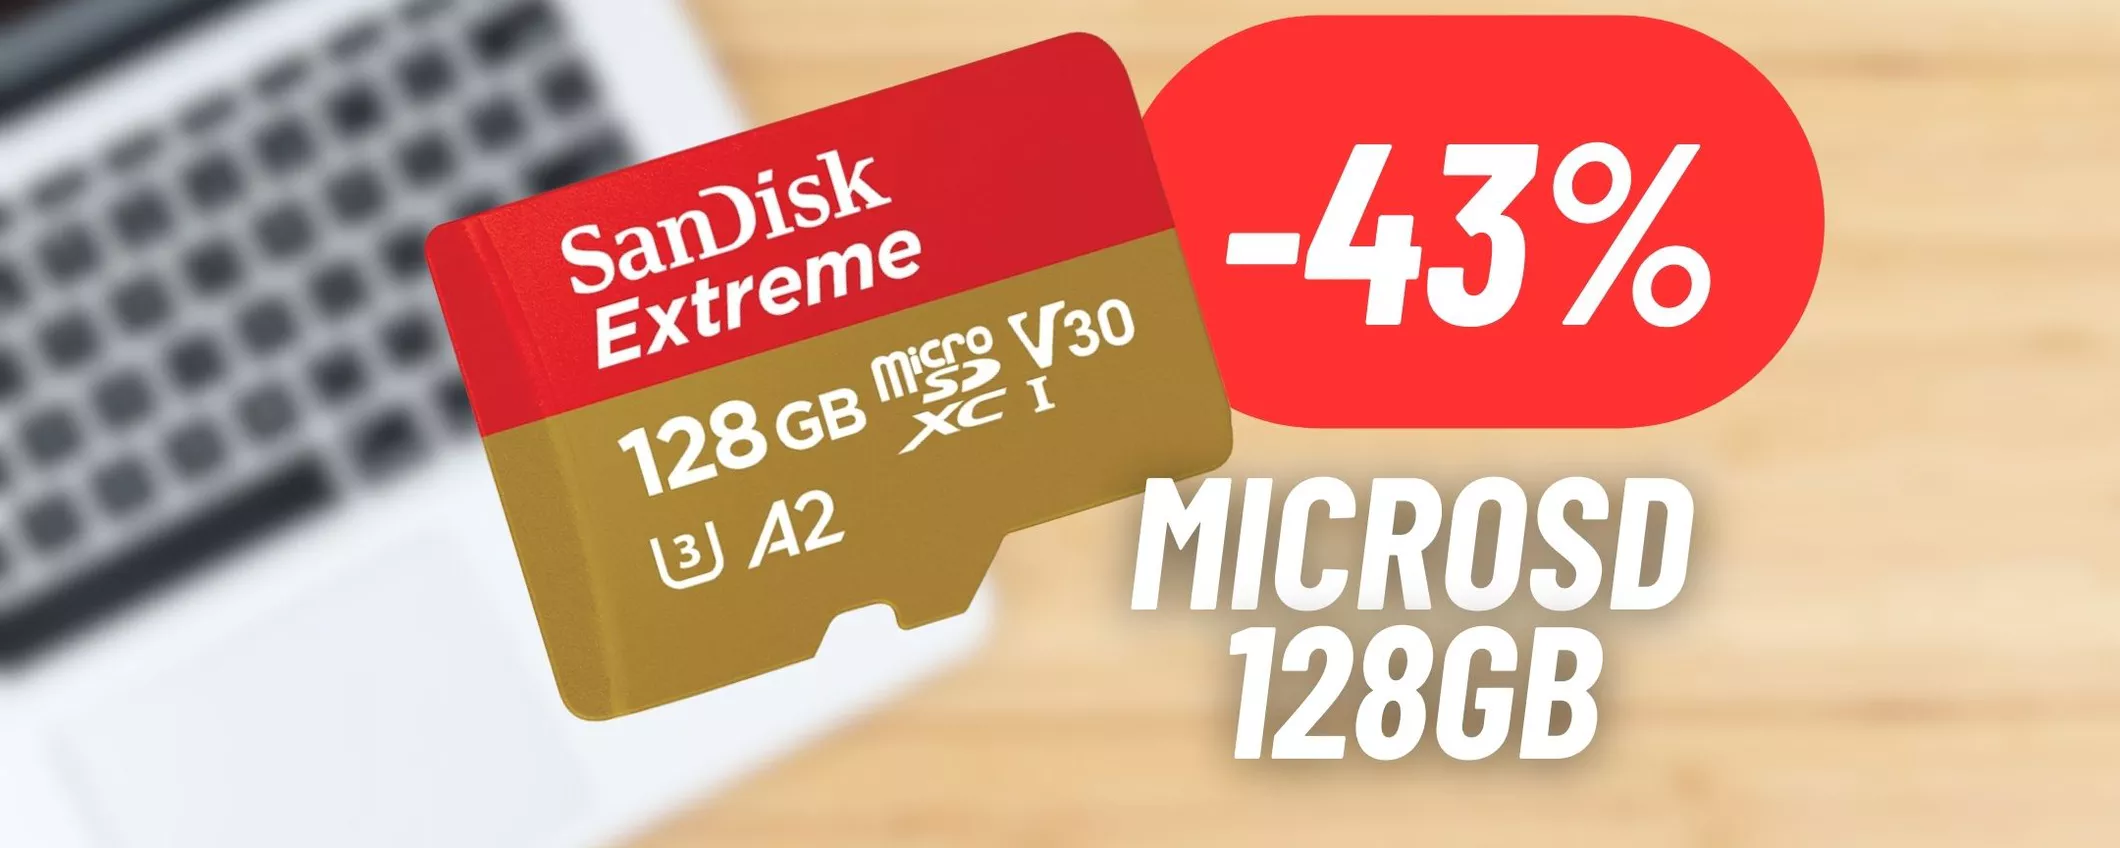 Amazon lancia una maxi promo sulla microSD SanDisk: 43% DI SCONTO